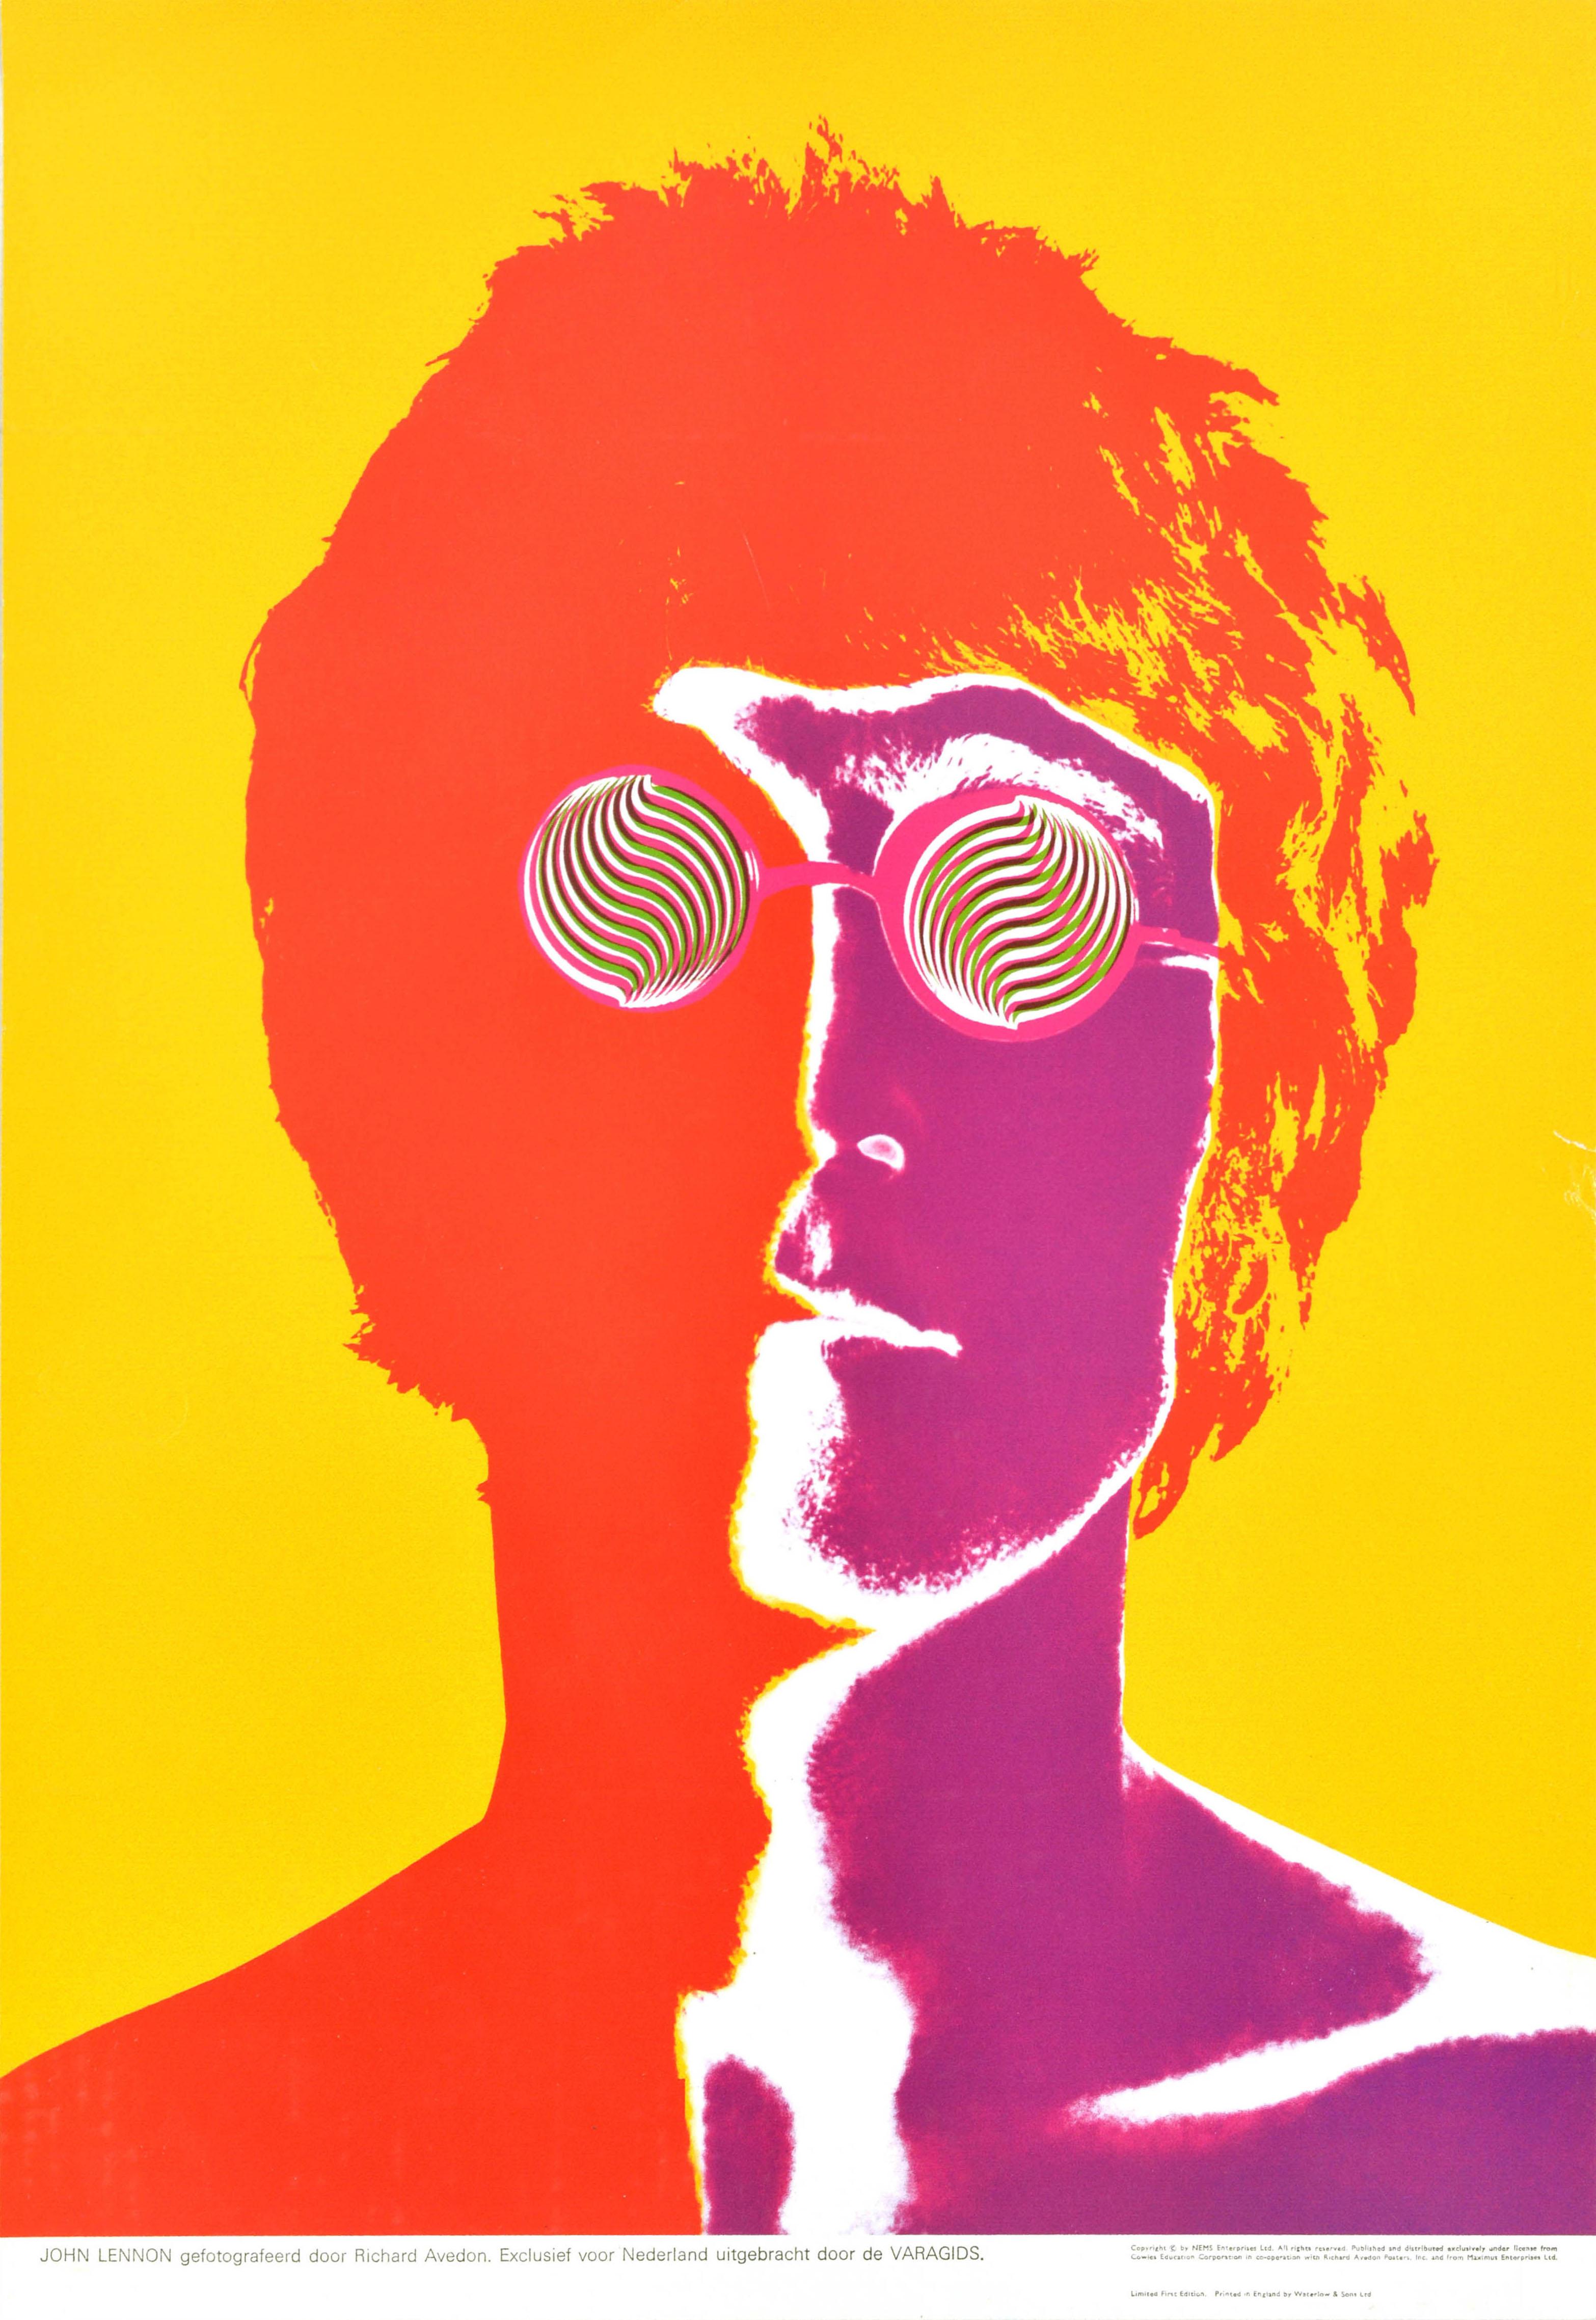 Richard Avedon Print - Original Vintage Music Advertising Poster Beatles John Lennon Glasses Avedon